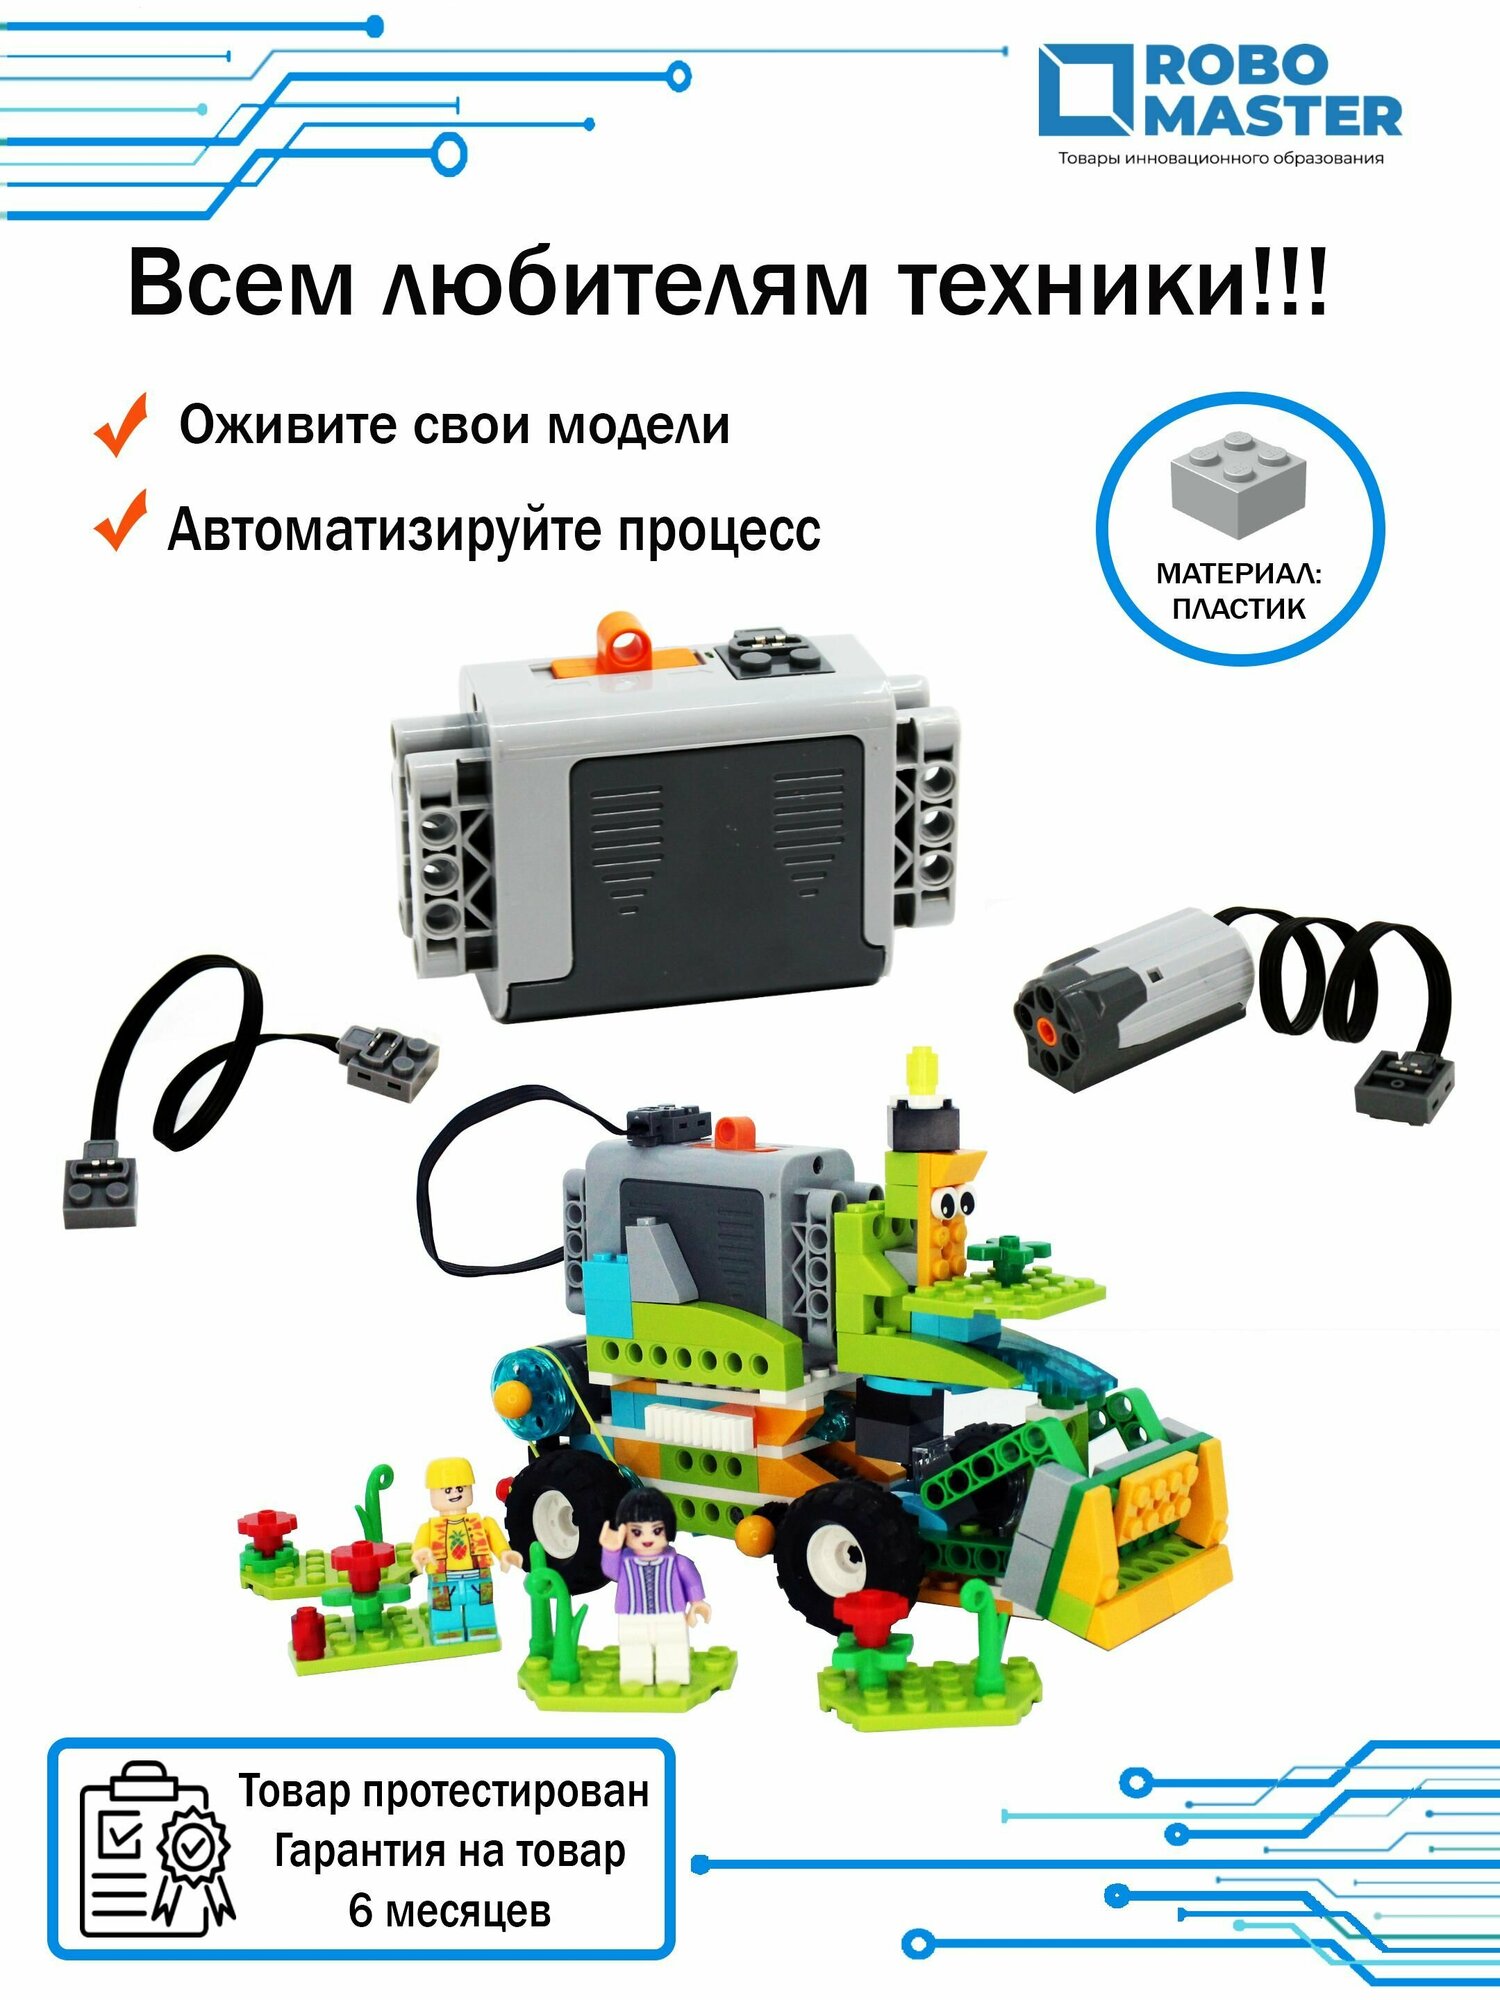 Детали LEGO Power Functions 8883 M-двигатель